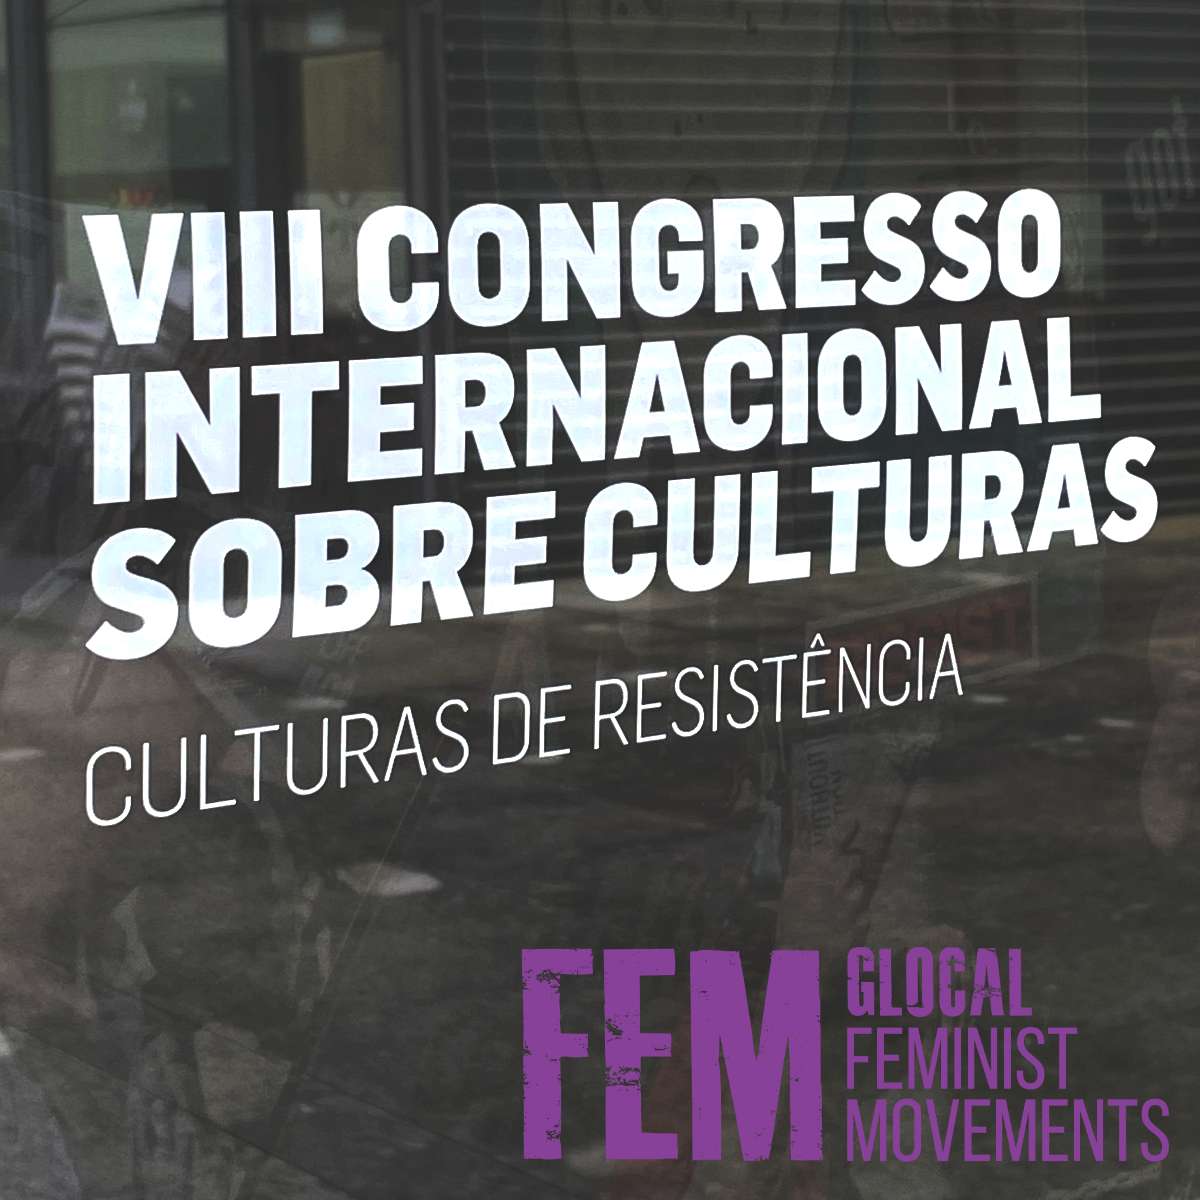 “Não há quem resista à luta feminista”: Ciberfeminismo e Interseccionalidade mo Movimento 8M em Portugal